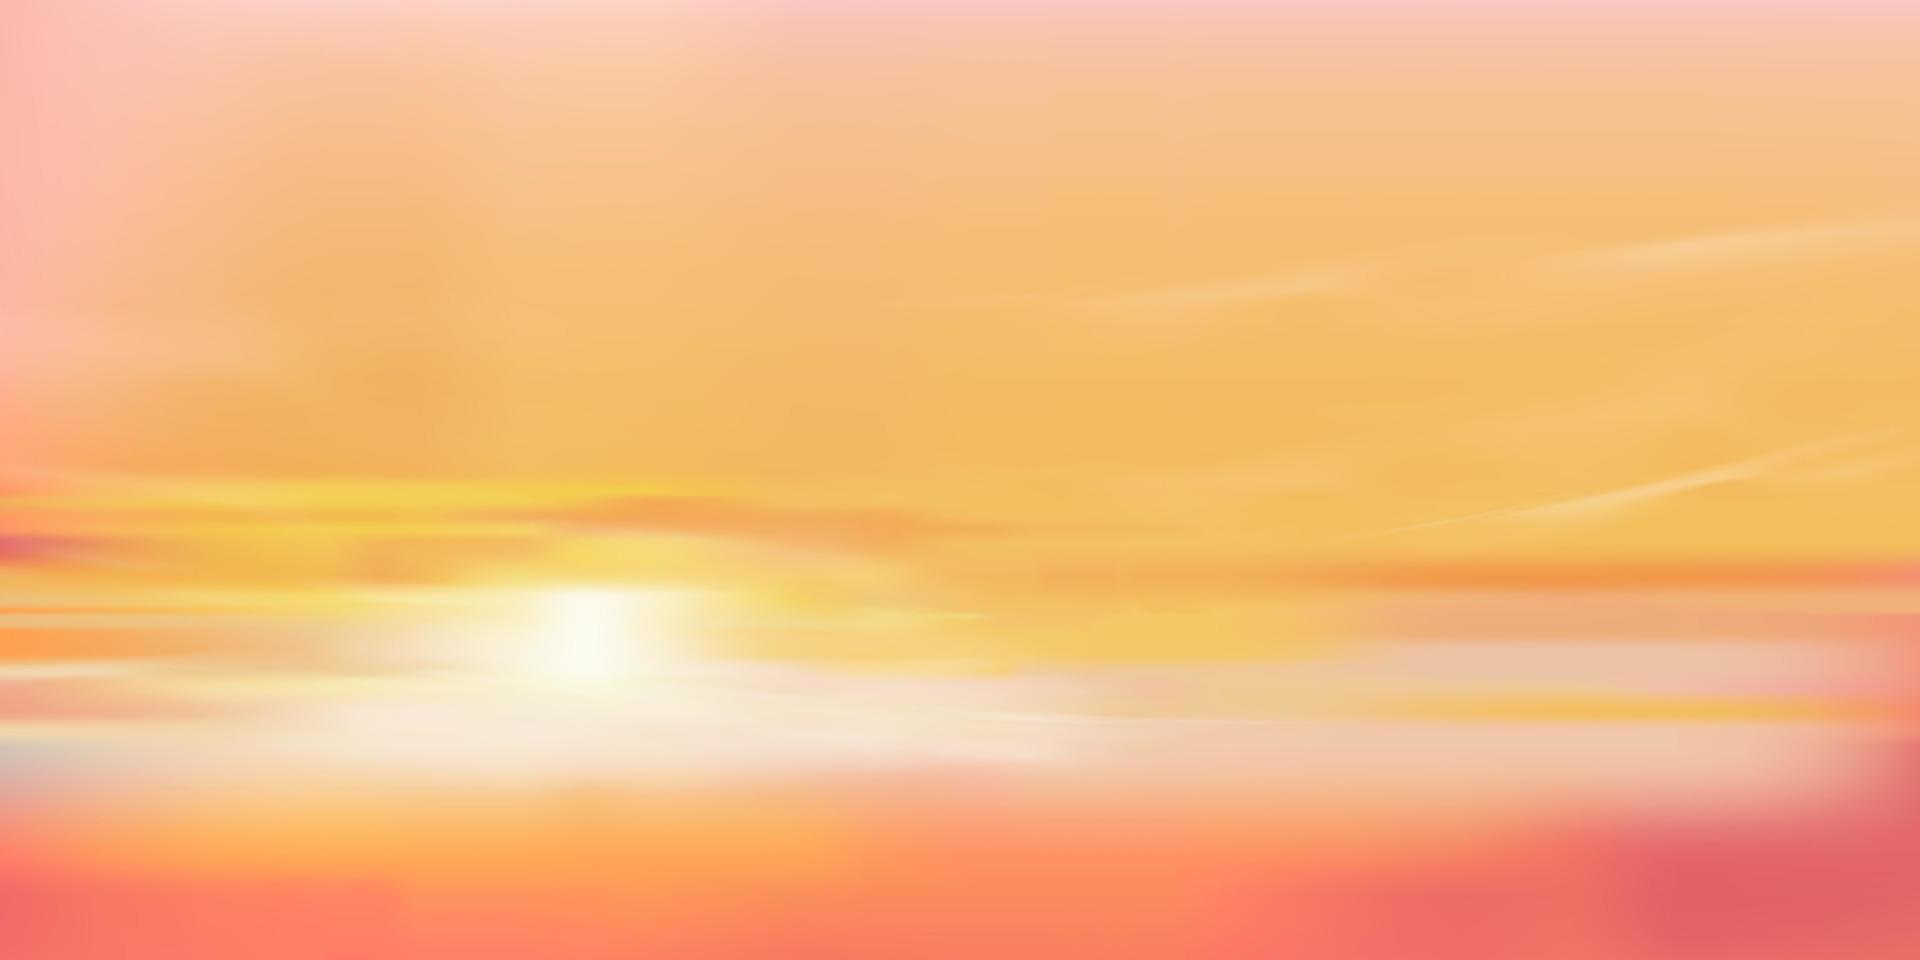 soluppgång i morgon- med orange, gul och rosa himmel, dramatisk skymning landskap med solnedgång i kväll, vektor maska horisont himmel baner av solnedgång eller solljus för fyra säsonger bakgrund